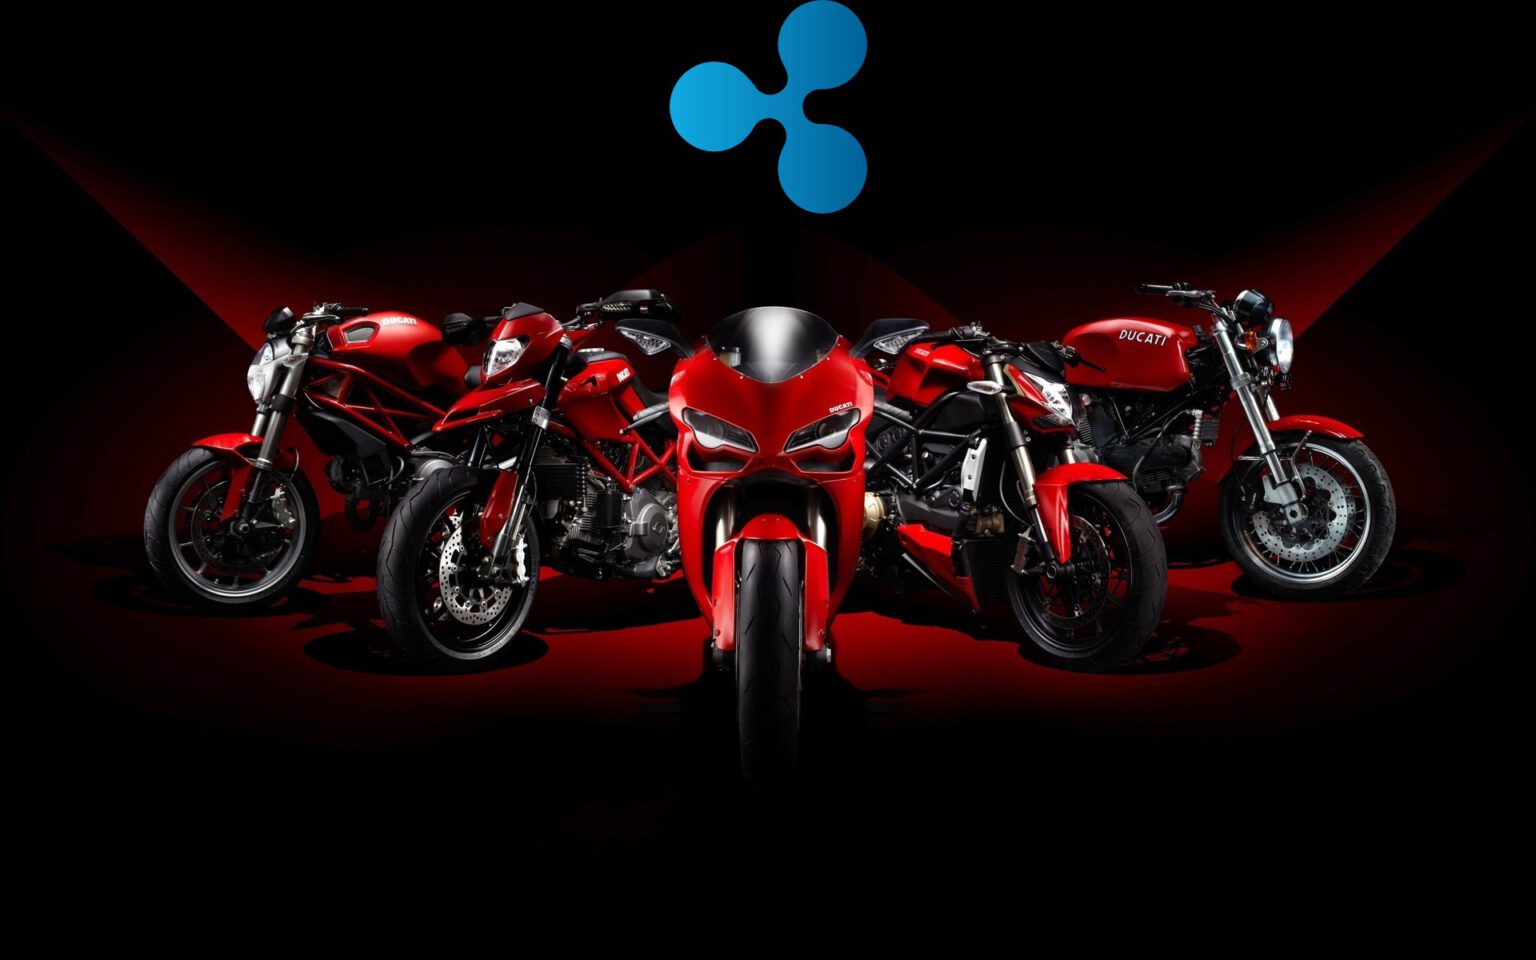 Ducati hợp tác với Ripple cho ra mắt bộ sưu tập NFT đầu tiên